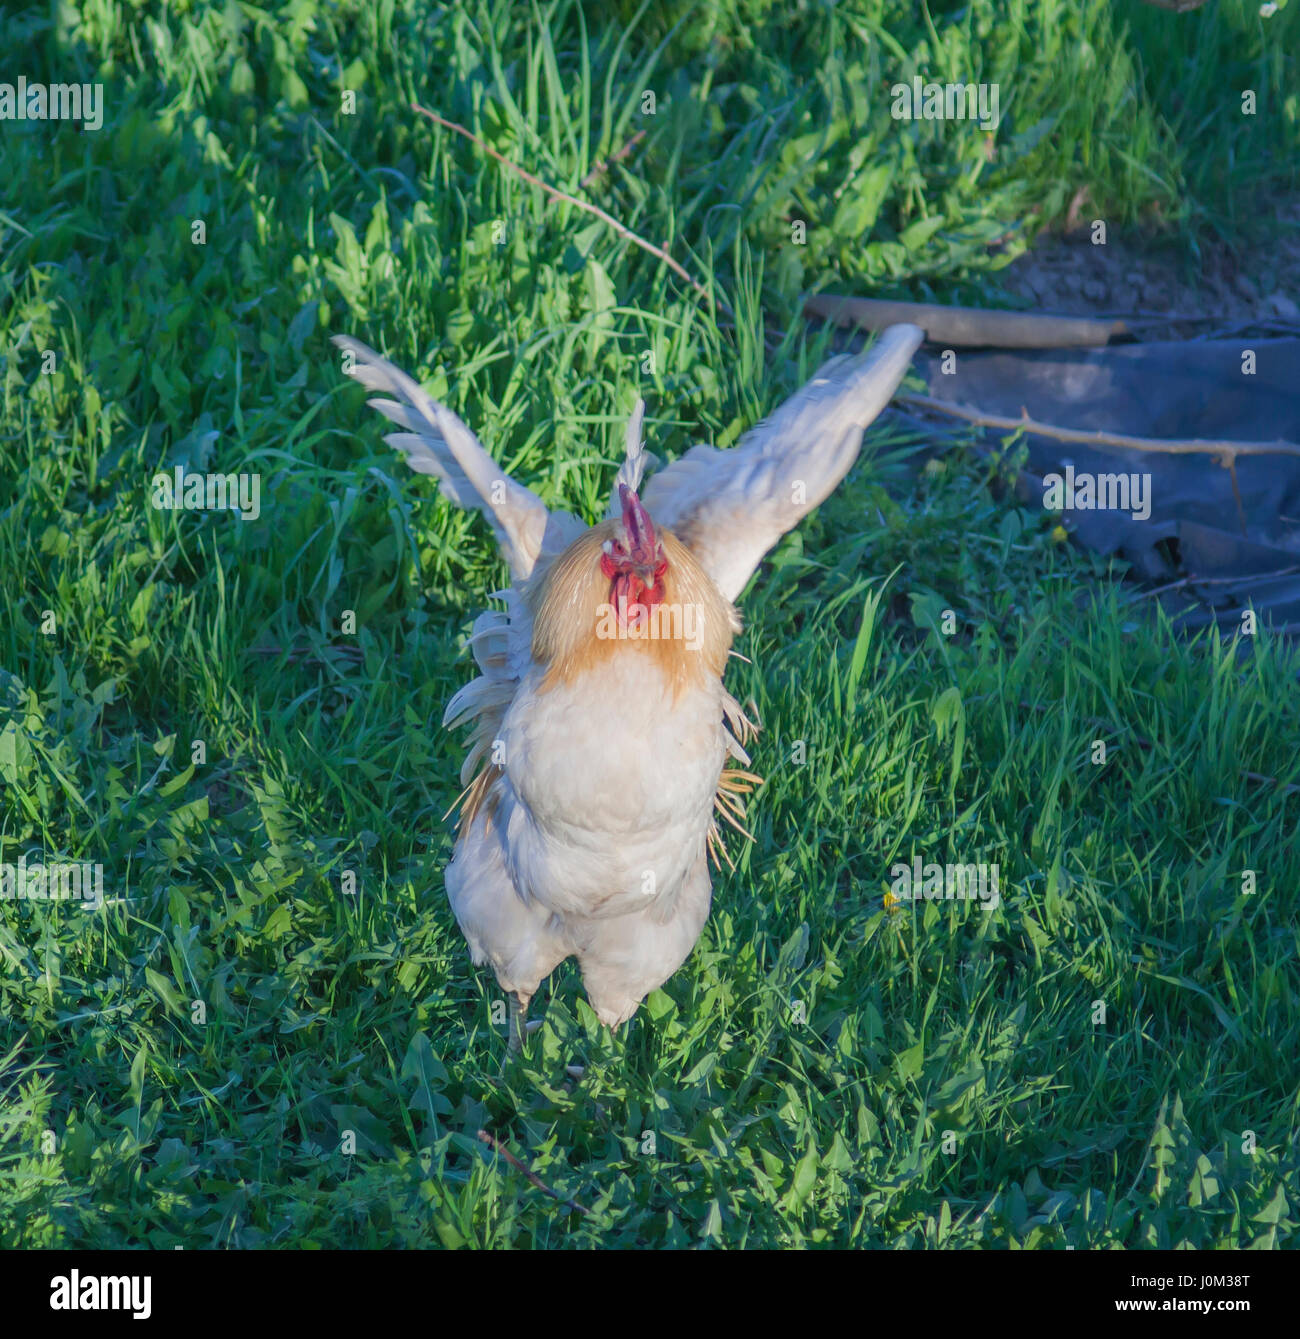 Coq bat des ailes sur l'herbe verte Banque D'Images